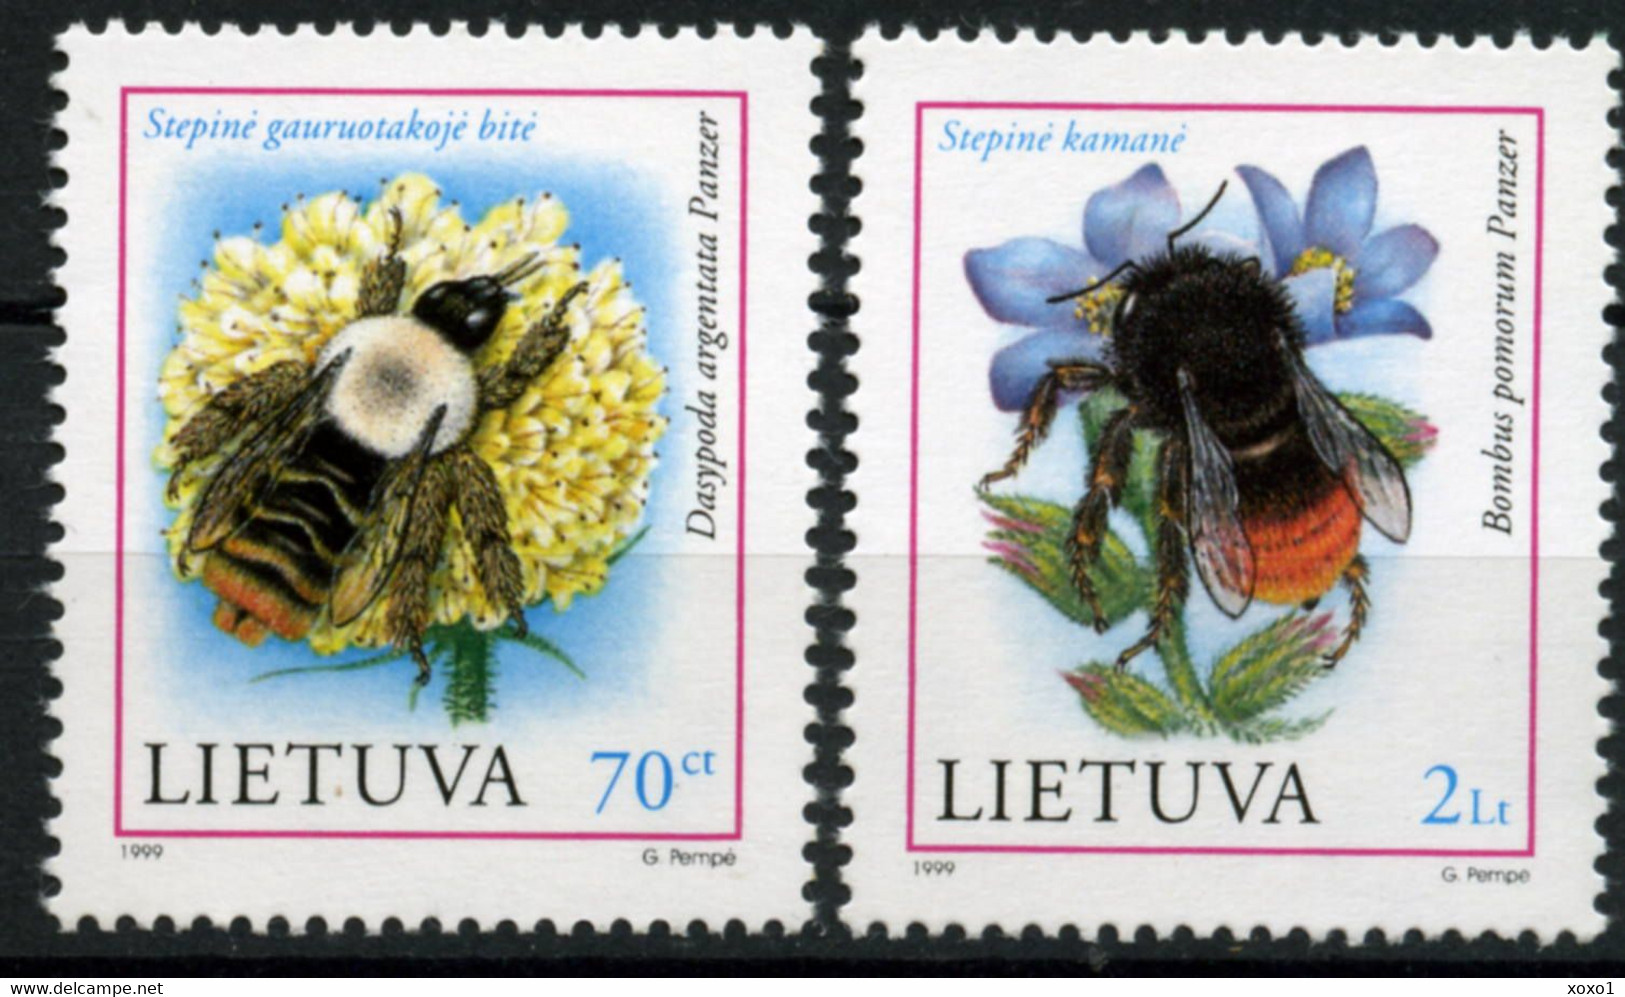 Lithuania 1999 MiNr. 698 - 699 Litauen Insekten Honeybees 2v  MNH** 2,00 € - Abeilles